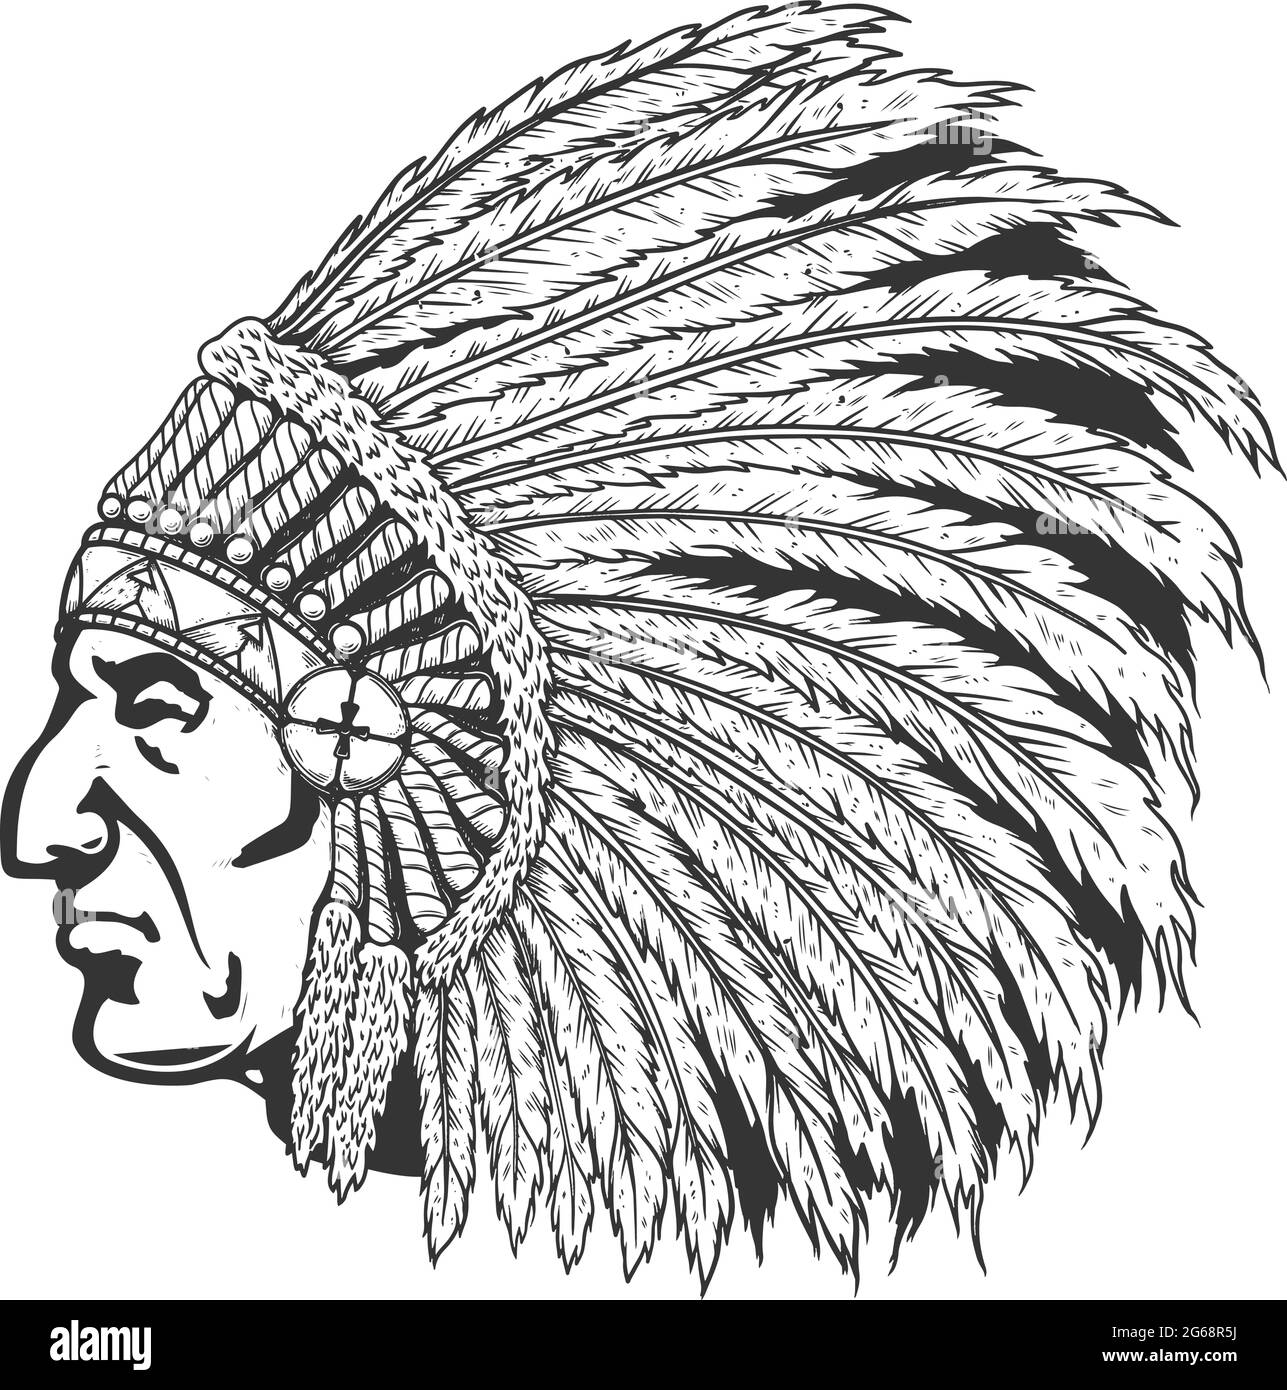 Illustration des amerikanischen Chefkopfes in traditionellem Kopfschmuck. Gestaltungselement für Logo, Etikett, Schild, Emblem, Plakat. Vektorgrafik Stock Vektor